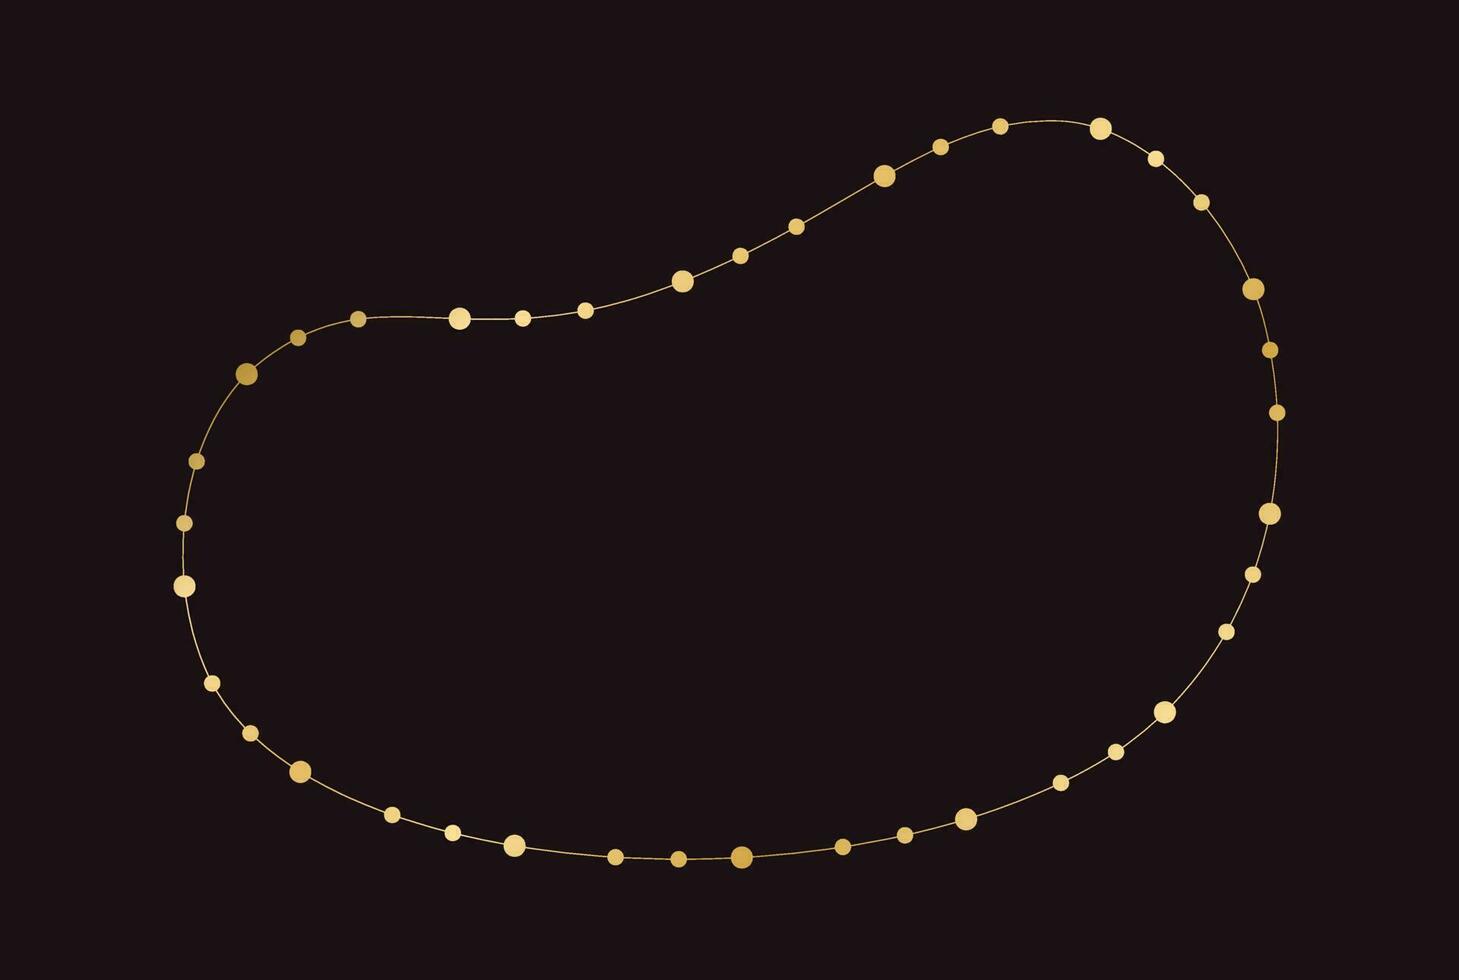 guld jul fe- lampor ram gräns mall. abstrakt gyllene prickar cirkel ram. vektor